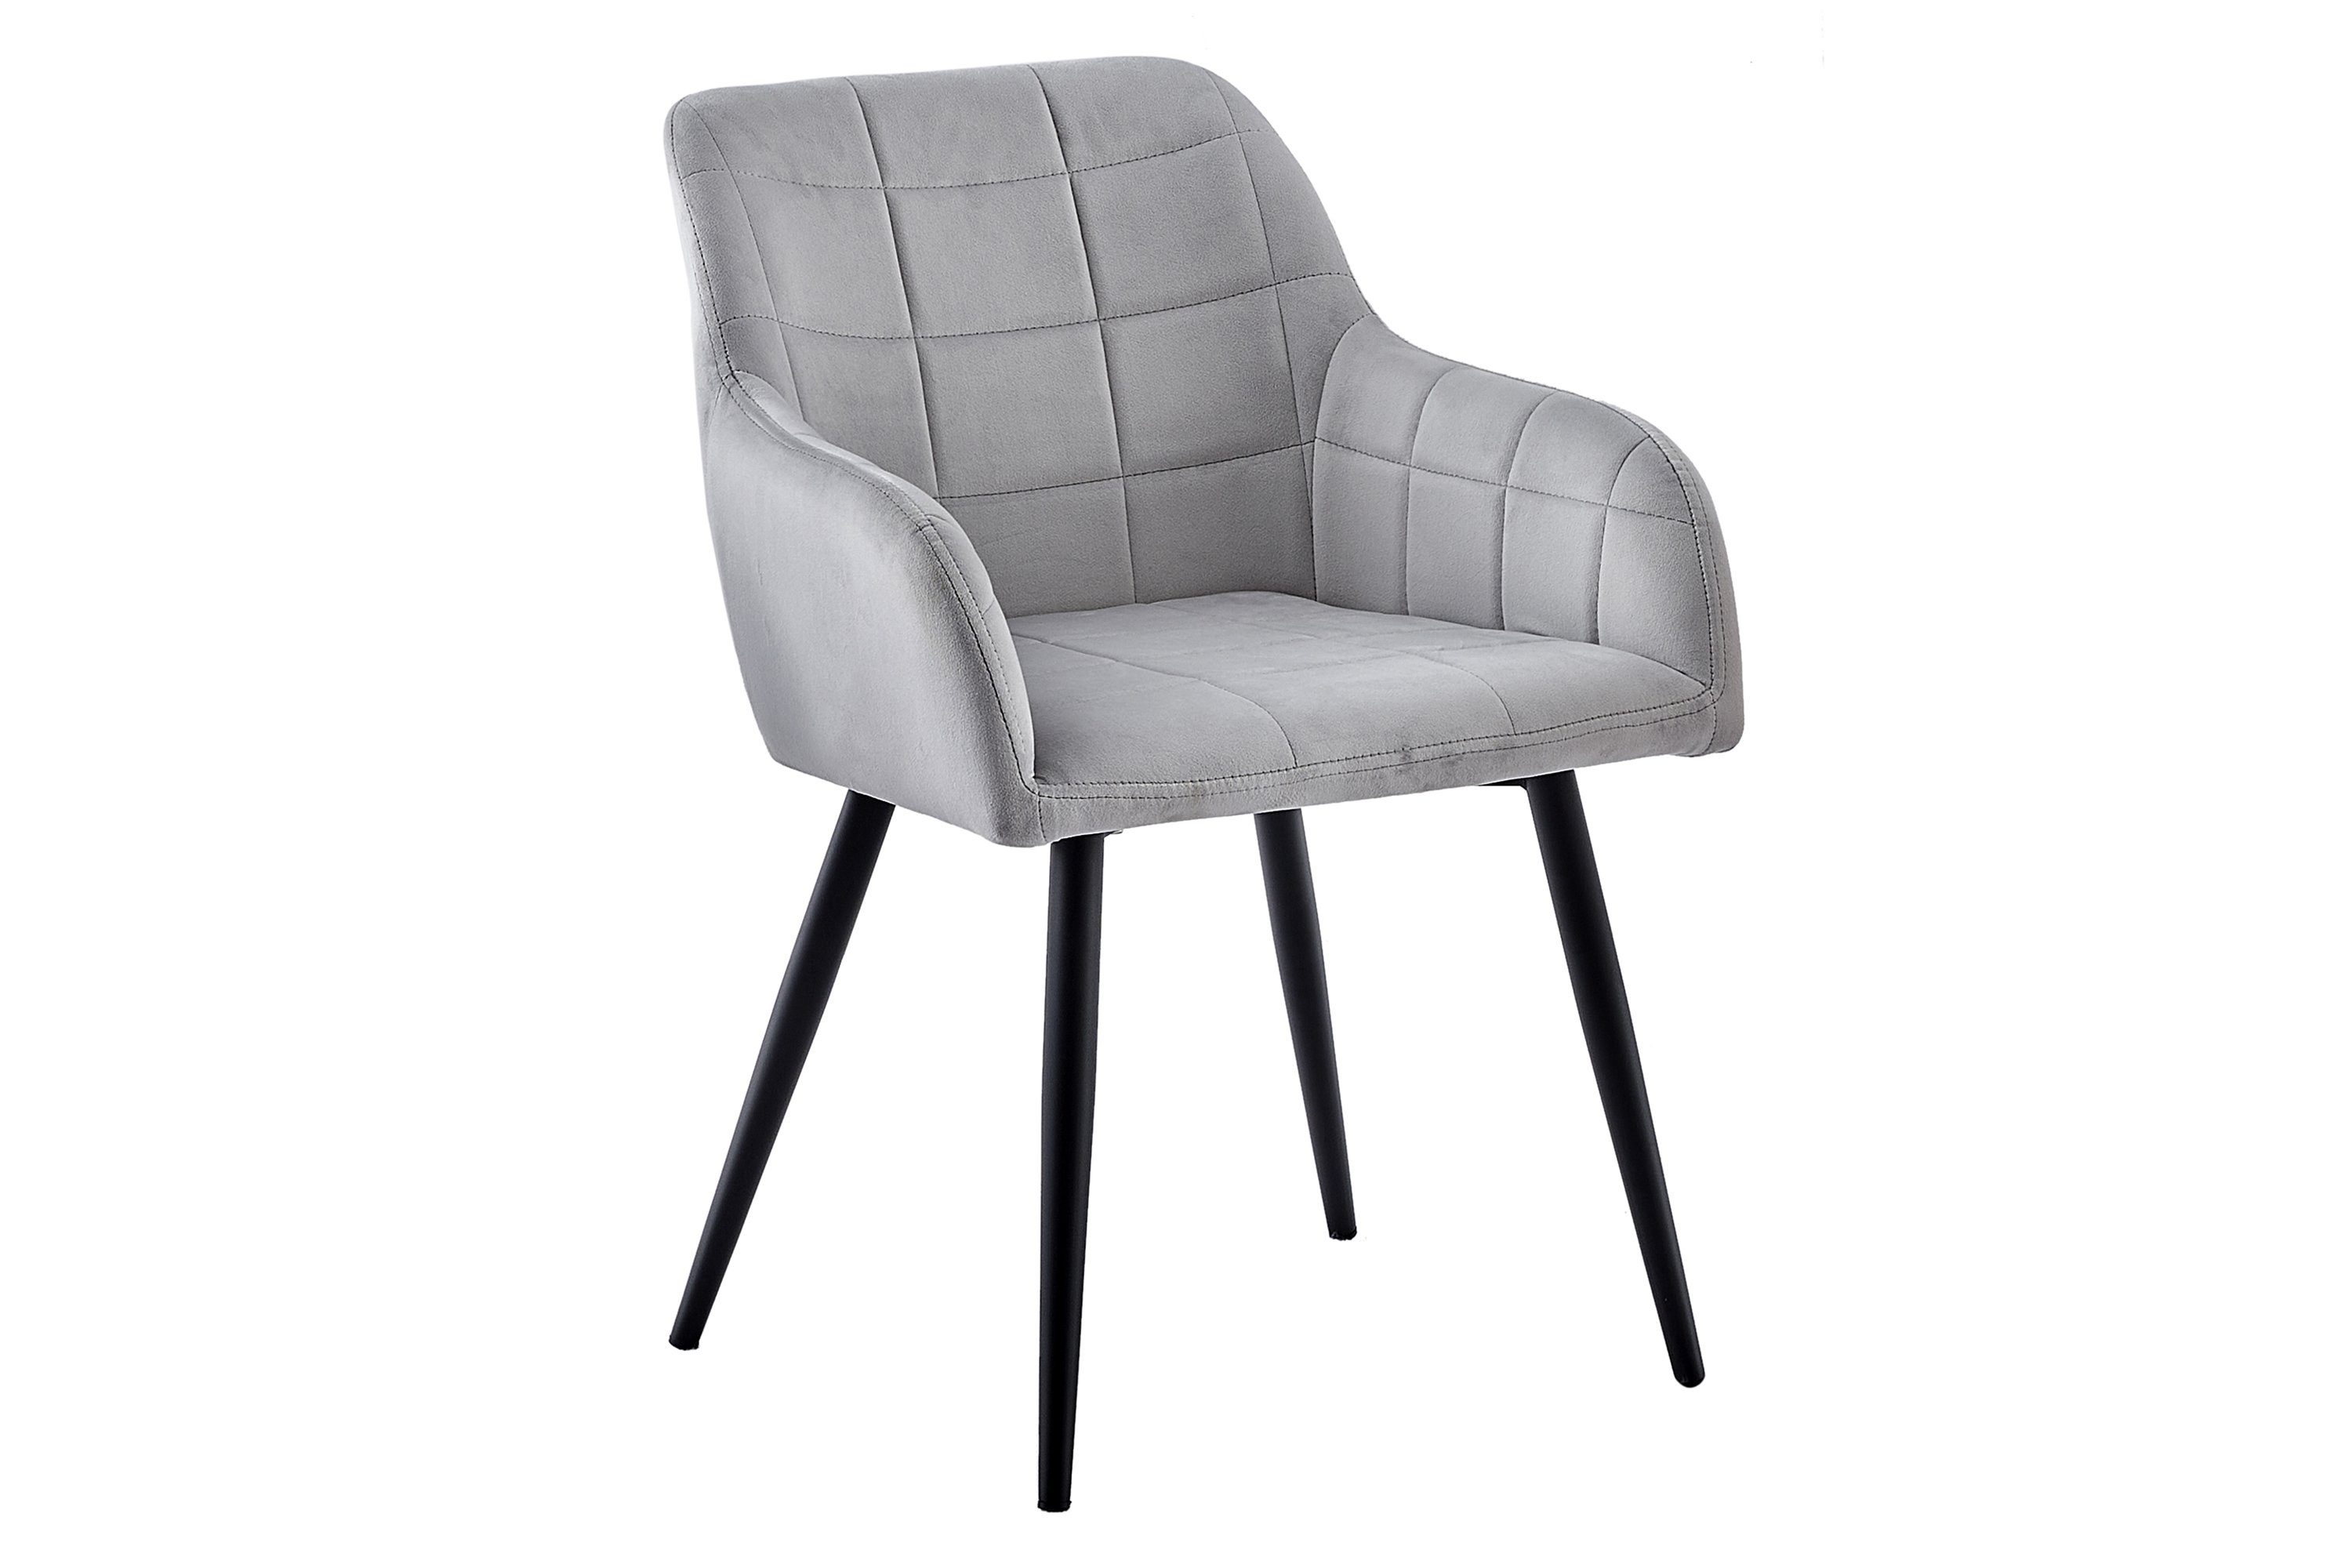 SAM® Schalenstuhl Kai, trendiger skandinavischer Stil mit ergonomischer Sitzschale